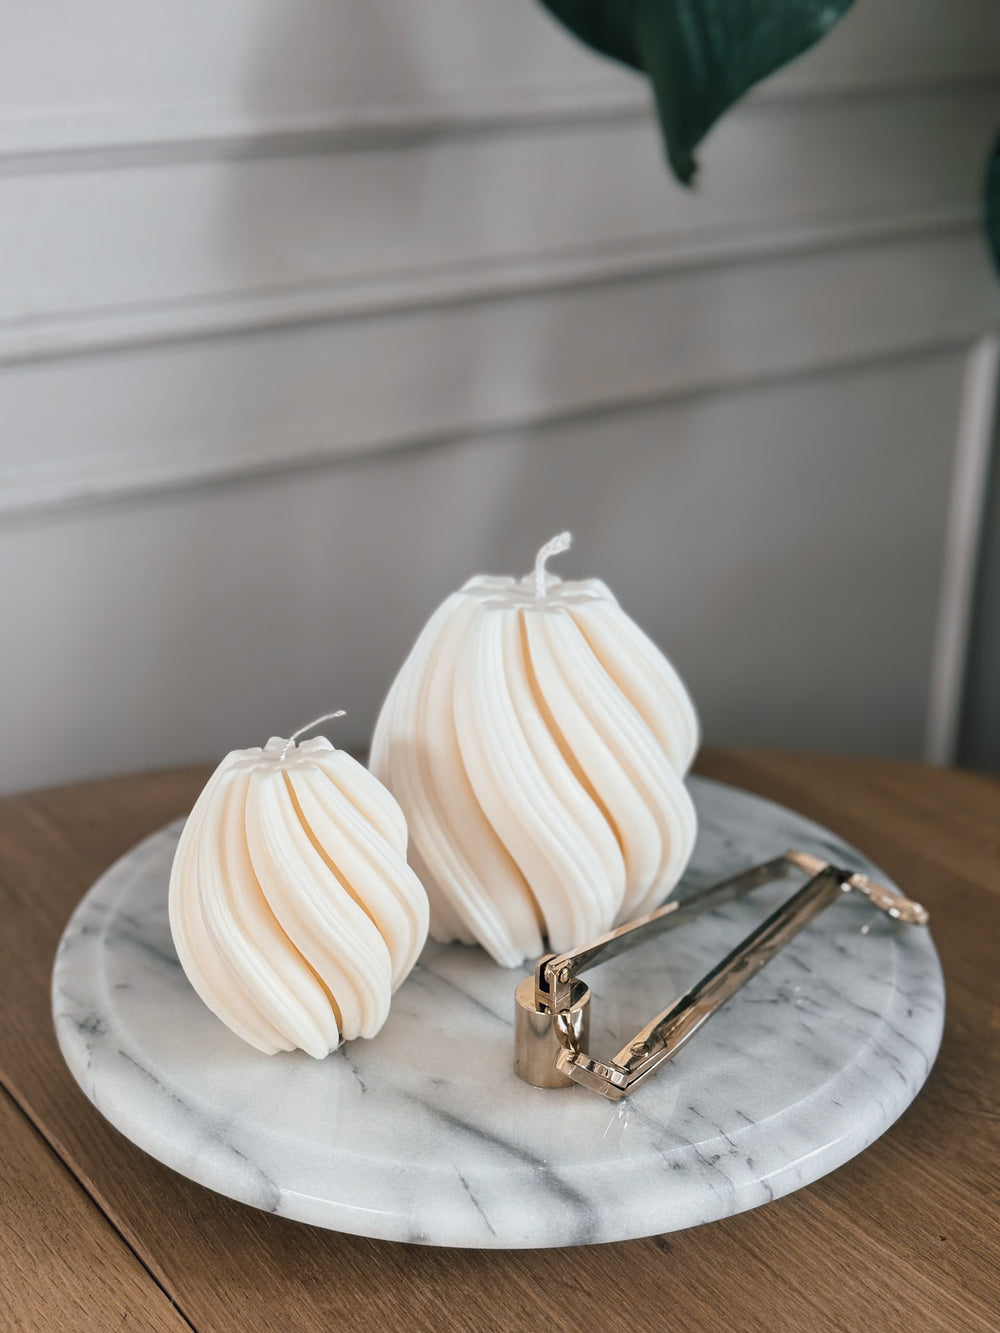 Makagi Swirl Kerzen aus Sojawachs in zwei Größen in weiß auf einer grauen Marmorplatte